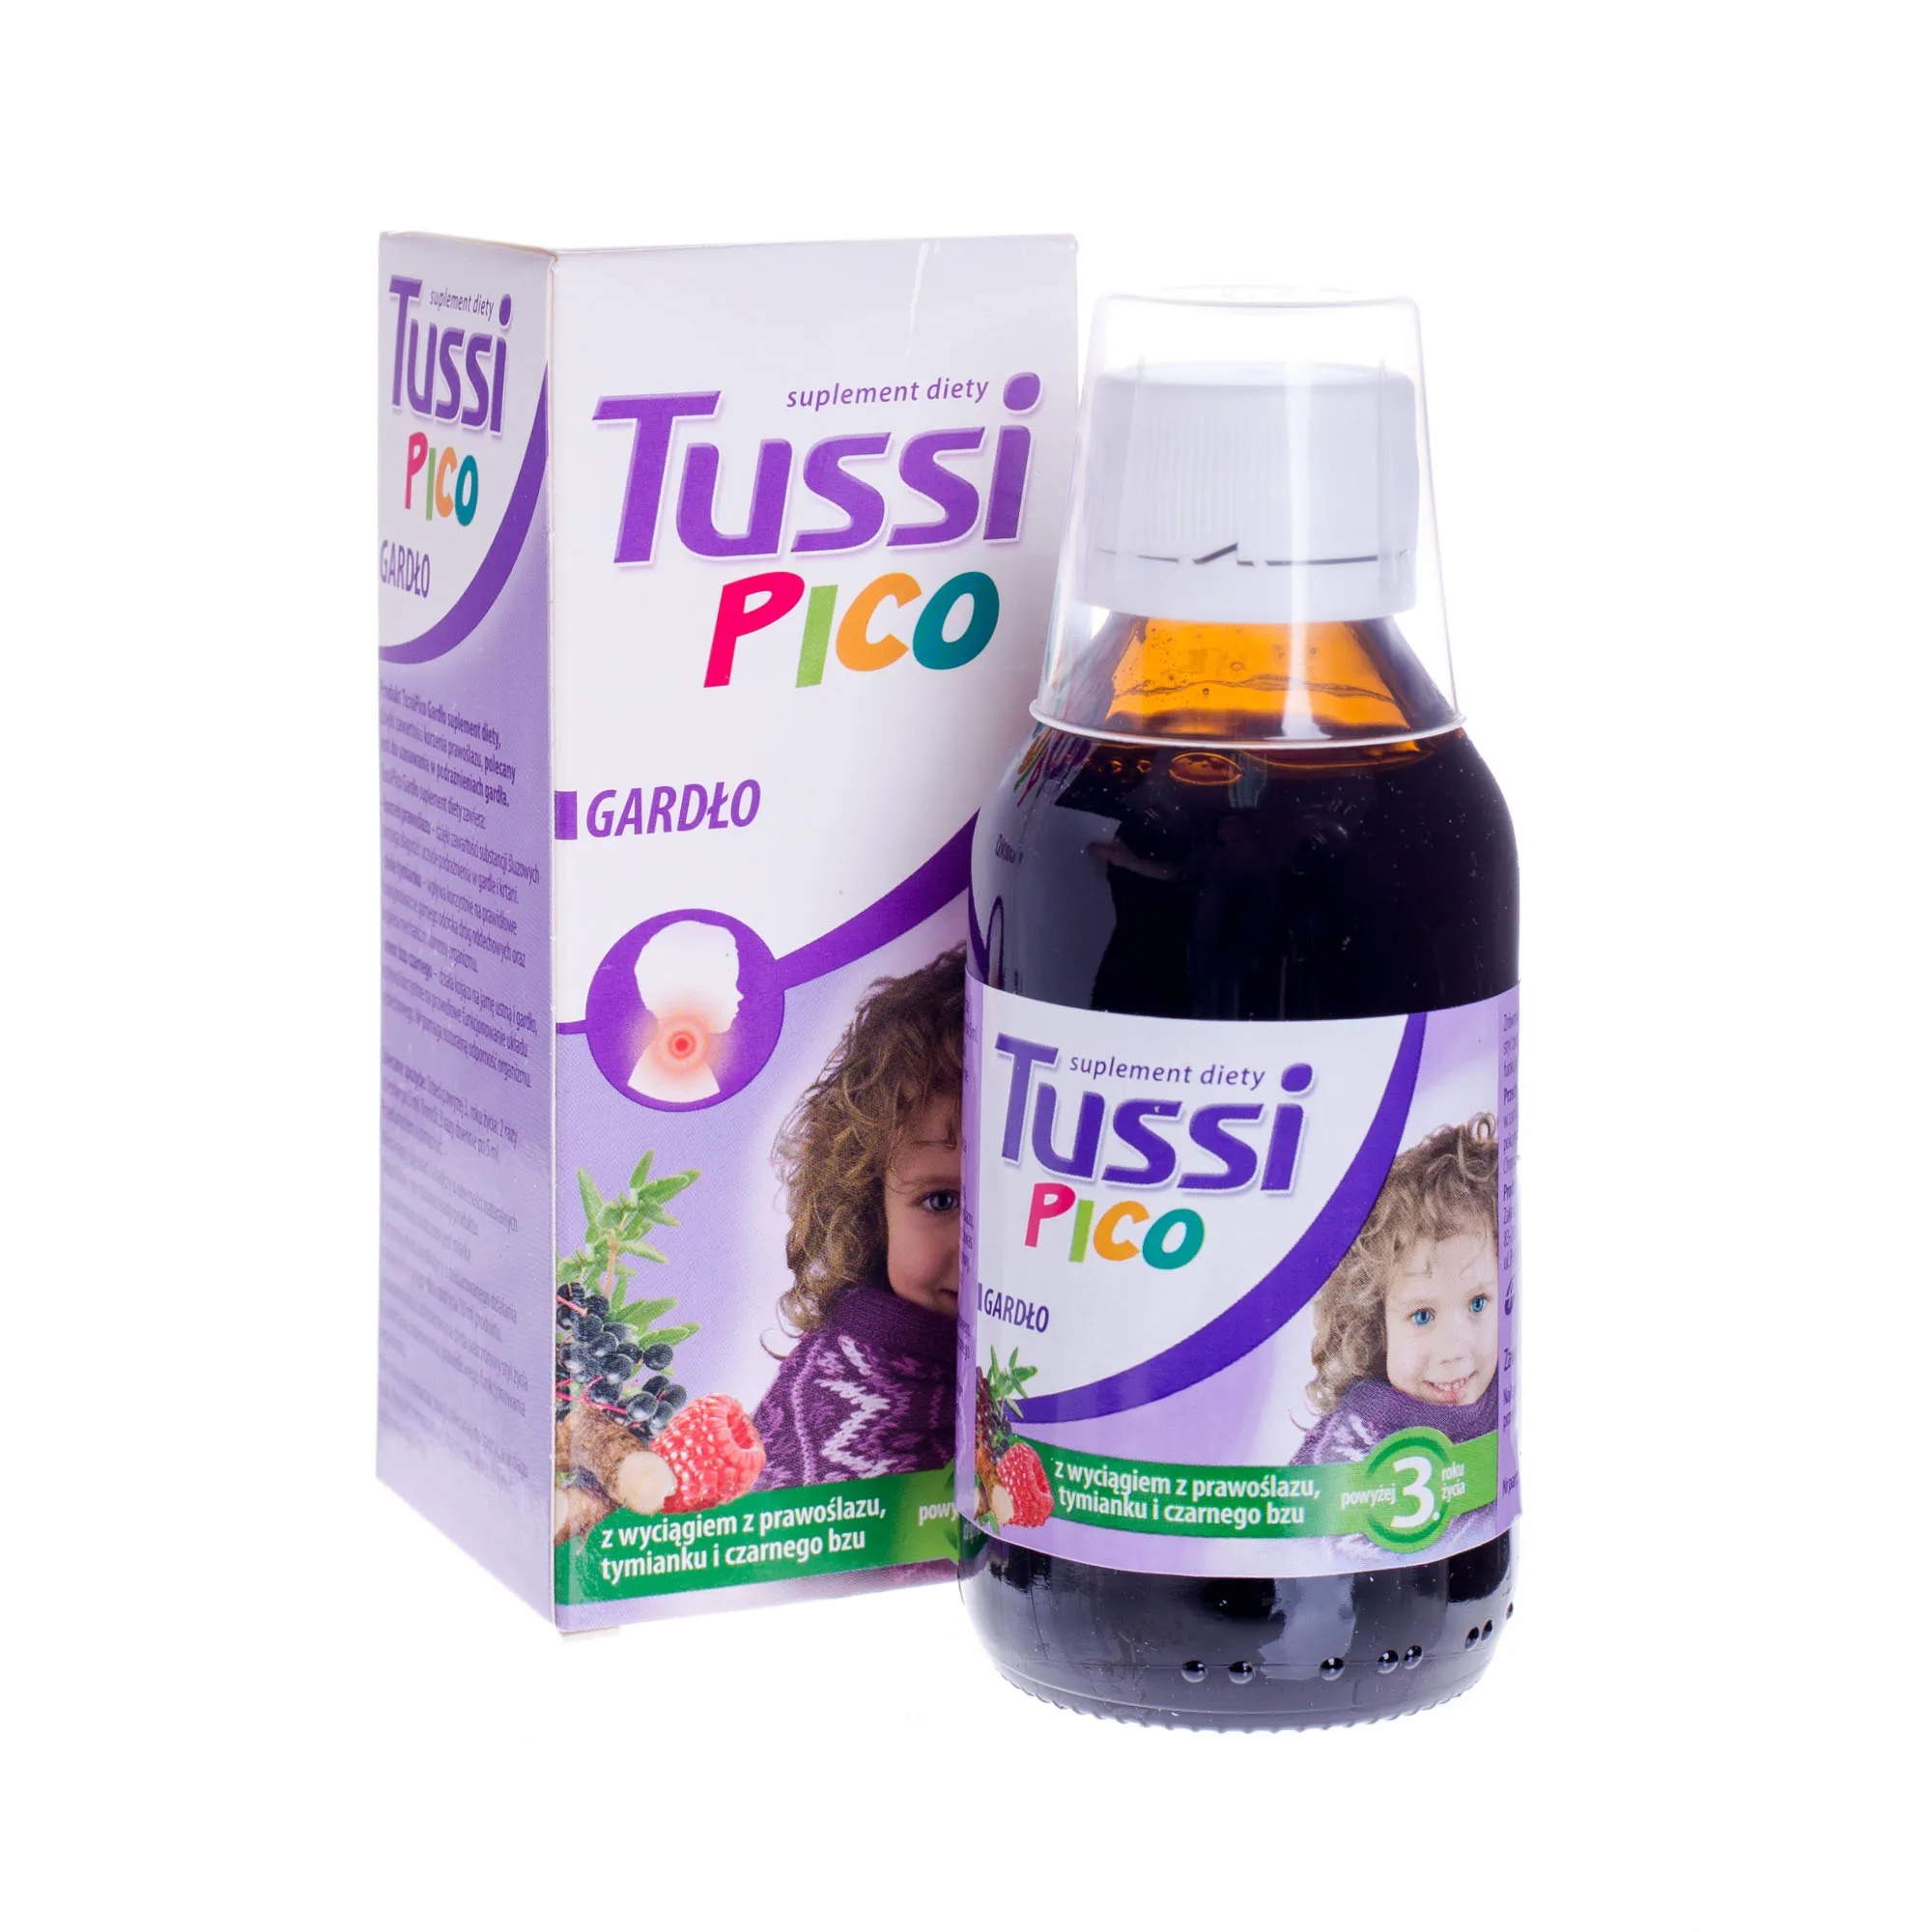 Tussi Pico Gardło, suplement diety z wyciągiem z prawoślazu, tymianku i czarnegoblu, 115 ml